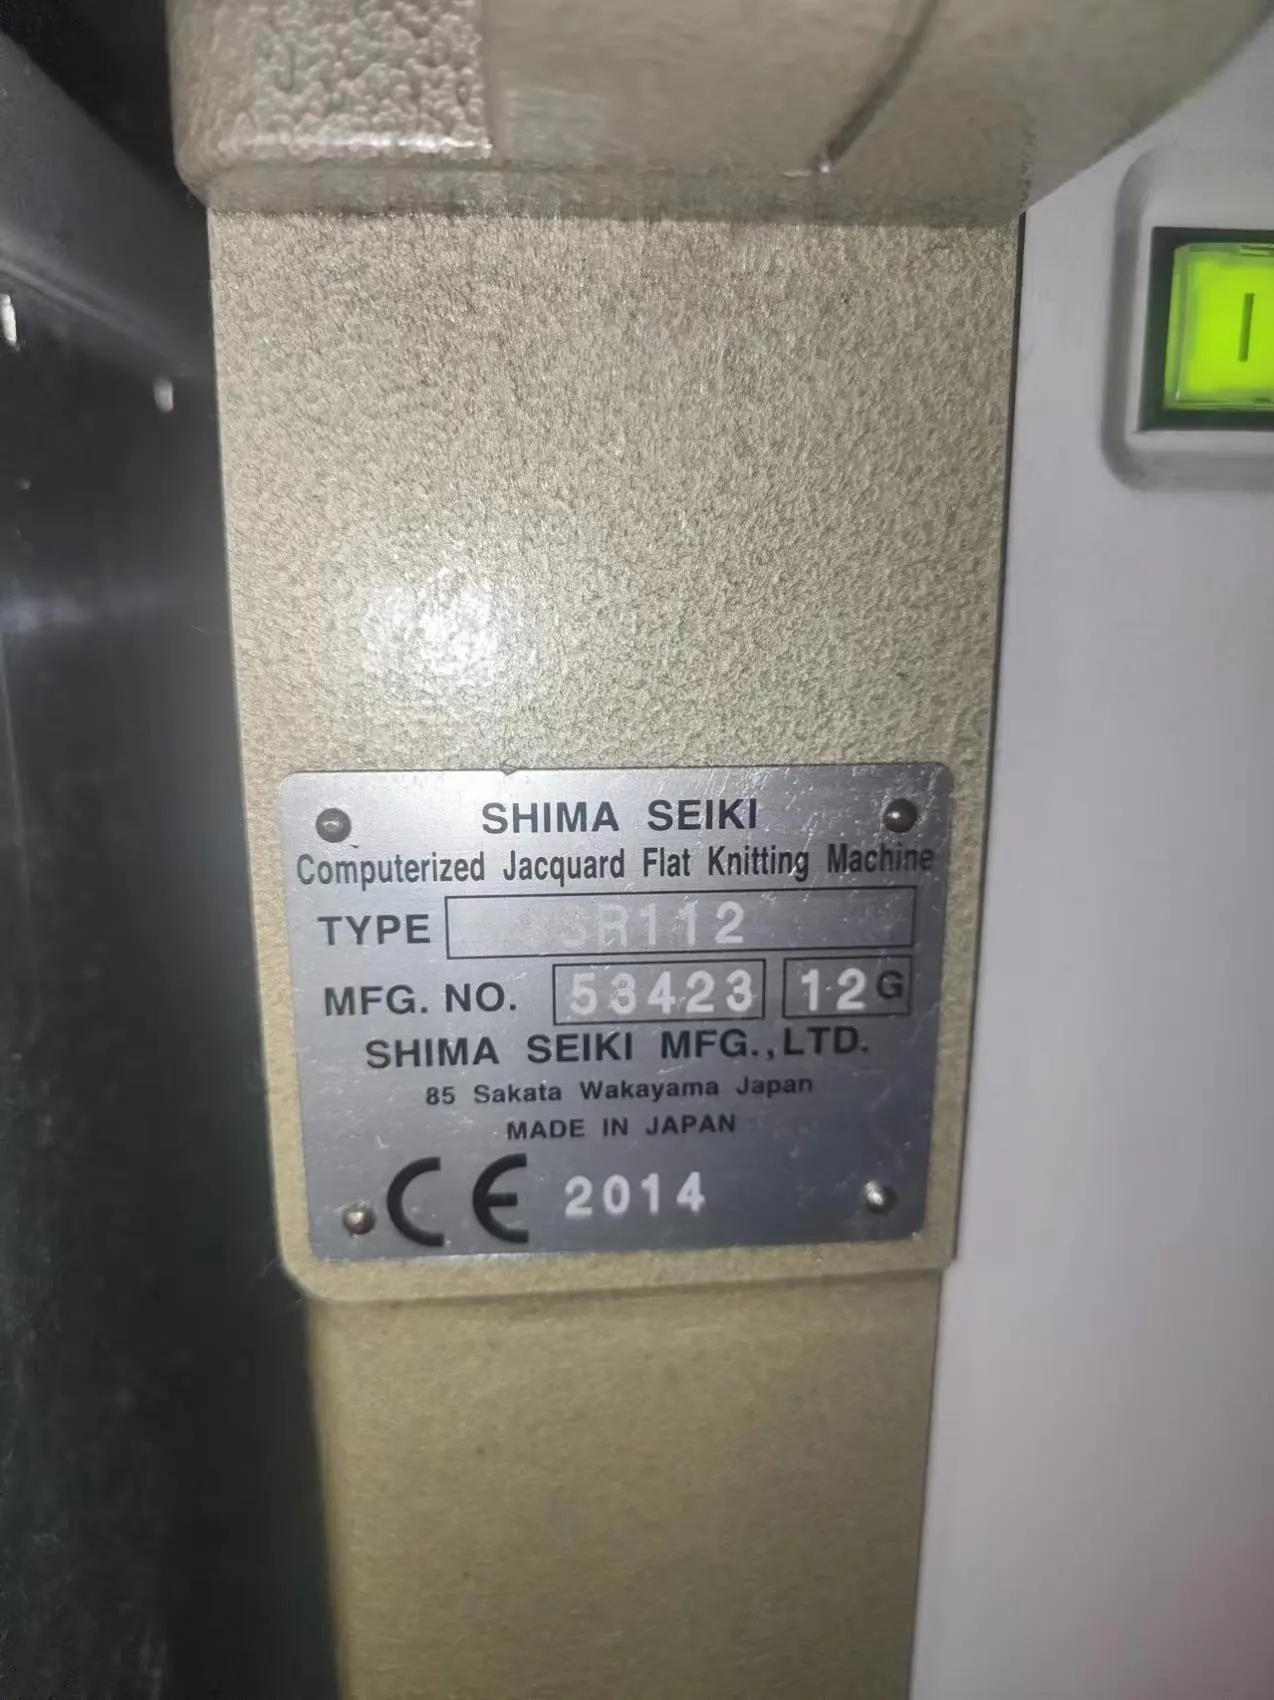 2011 để 2014 thứ hai tay shima Seiki máy dệt kim vi tính ssr112sv 14g